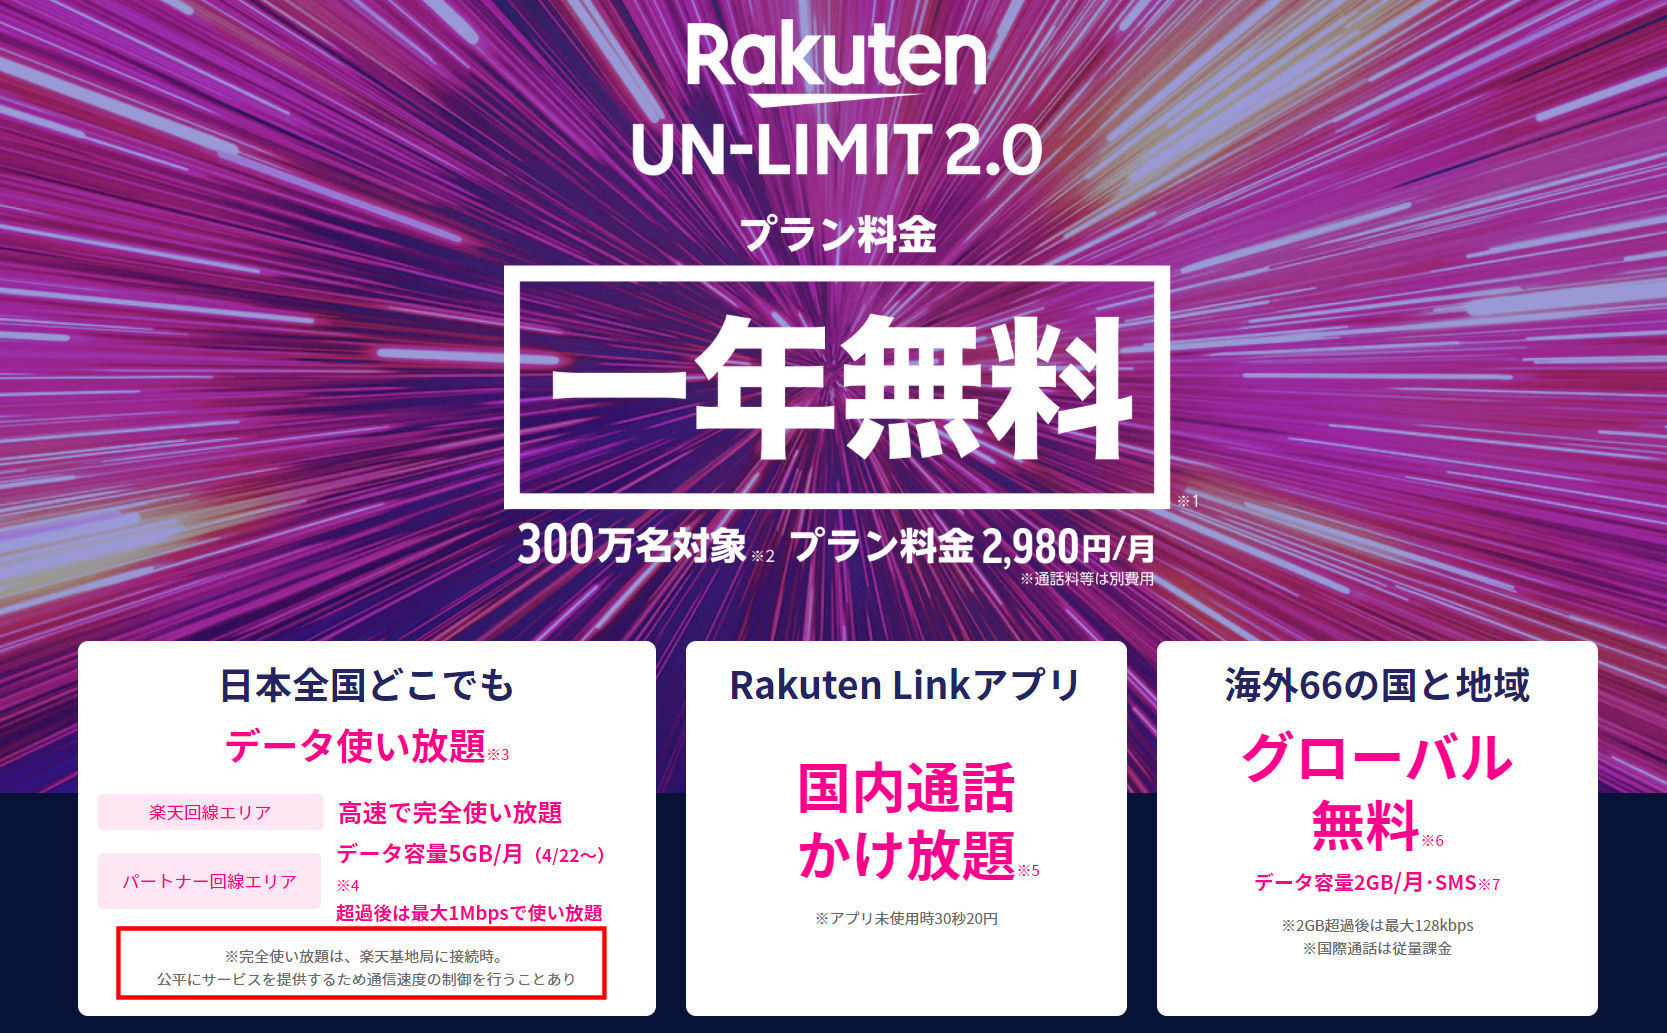 楽天モバイルの「Rakuten UN-LIMIT」、自社回線でも容量制限あり？　詳細を確認した